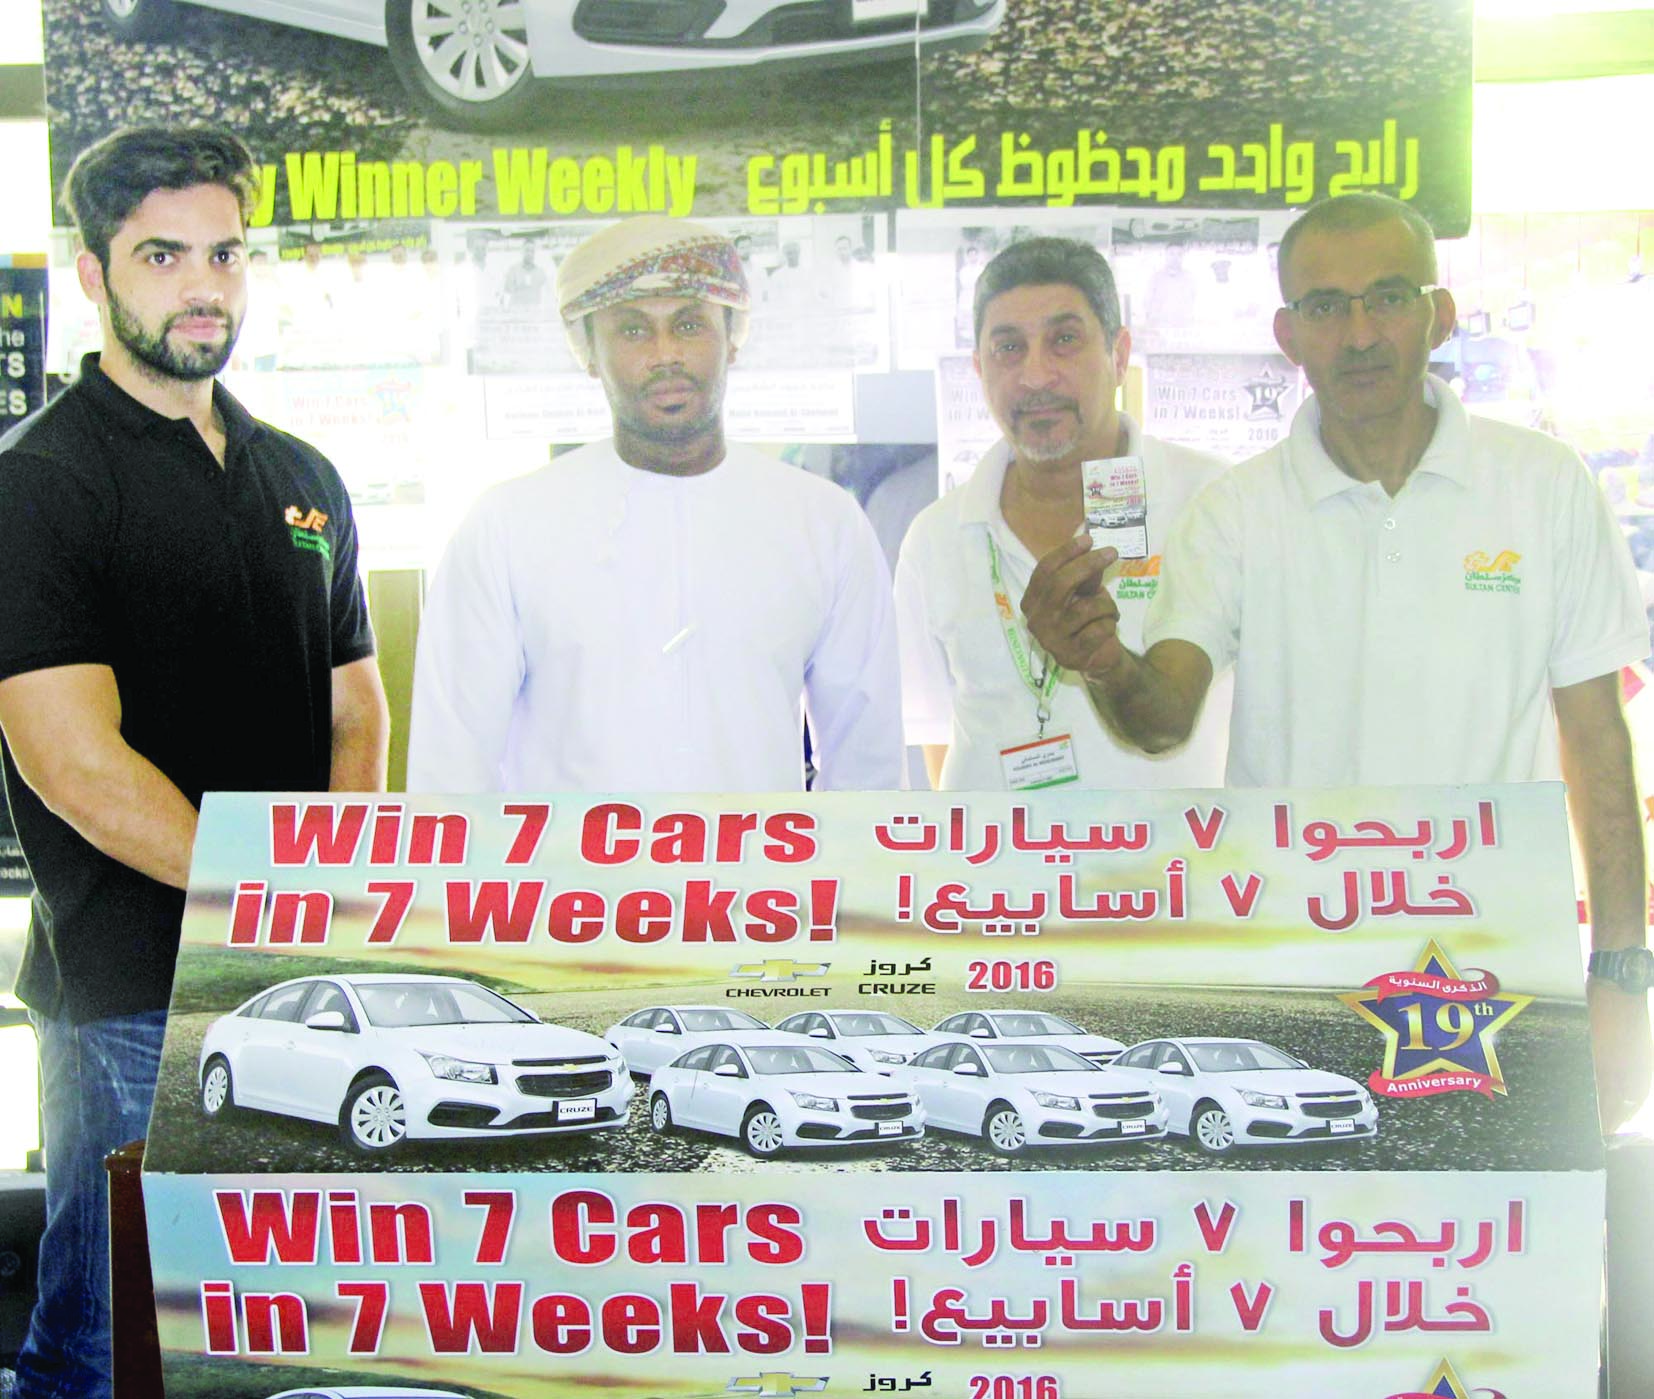 مركز سلطان يختتم حملة "7 سيارات خلال 7 أسابيع"